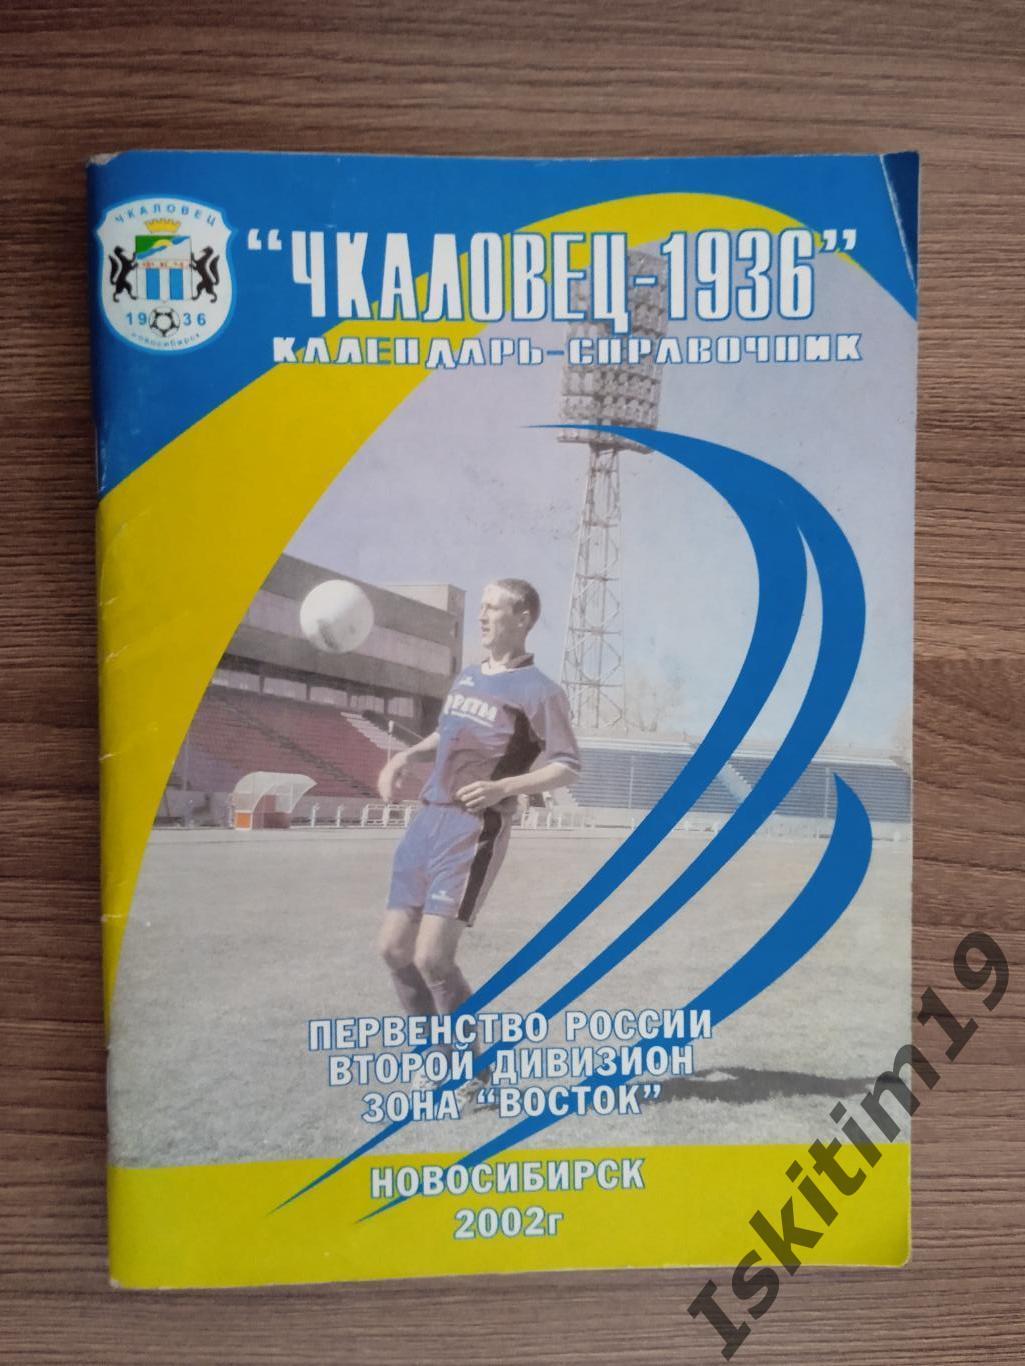 Календарь-справочник футбольный клуб Чкаловец-1936 Новосибирск 2002